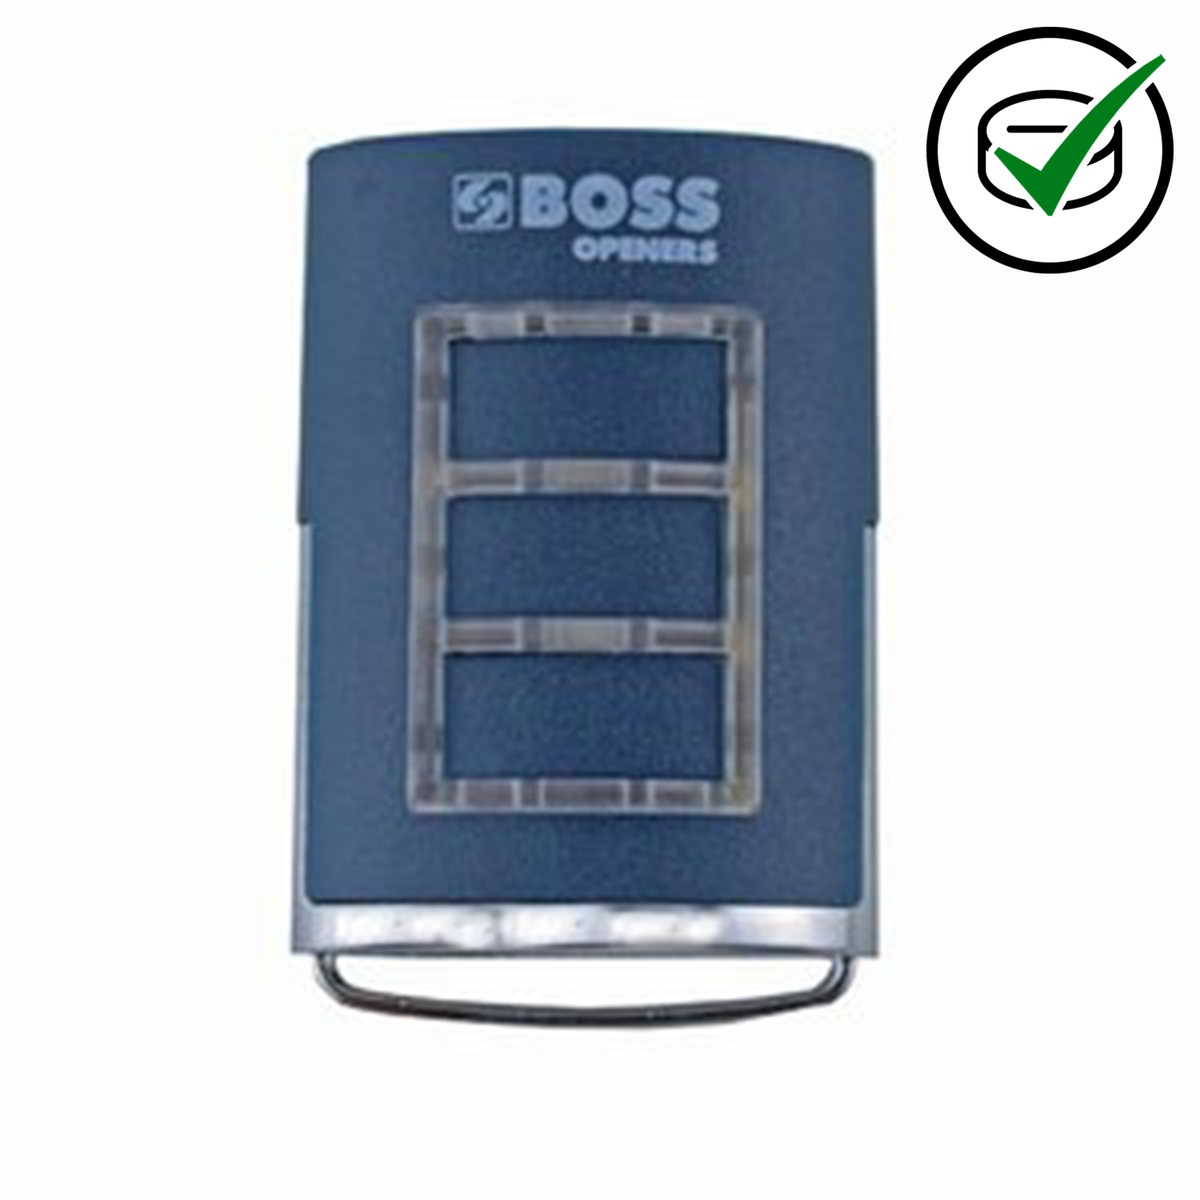 Genuine Boss 3 button remote handset 433MHz